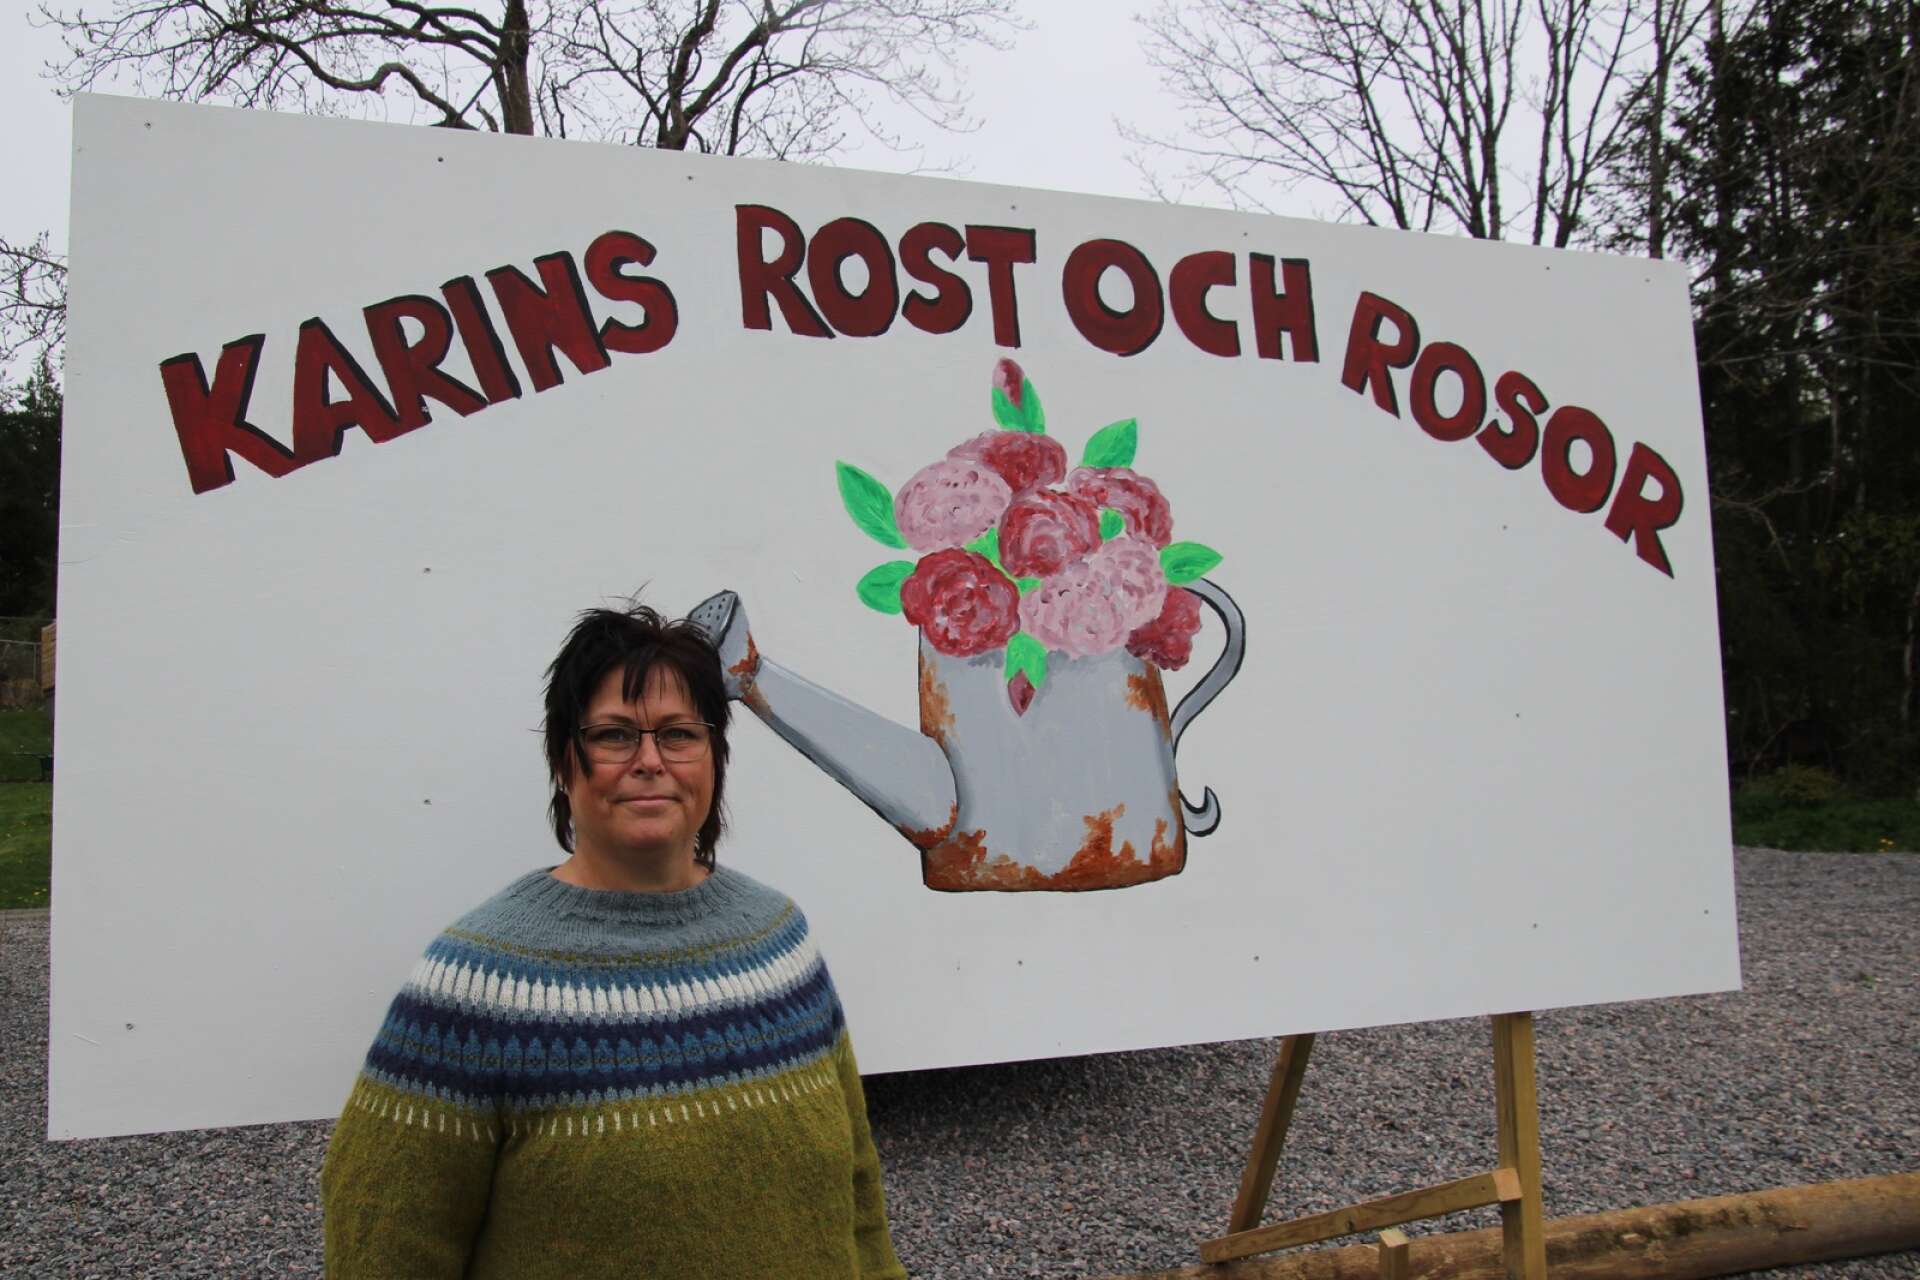 Karins rost och rosor blir namnet på Anna-Karin Karlssons handelsträdgård.